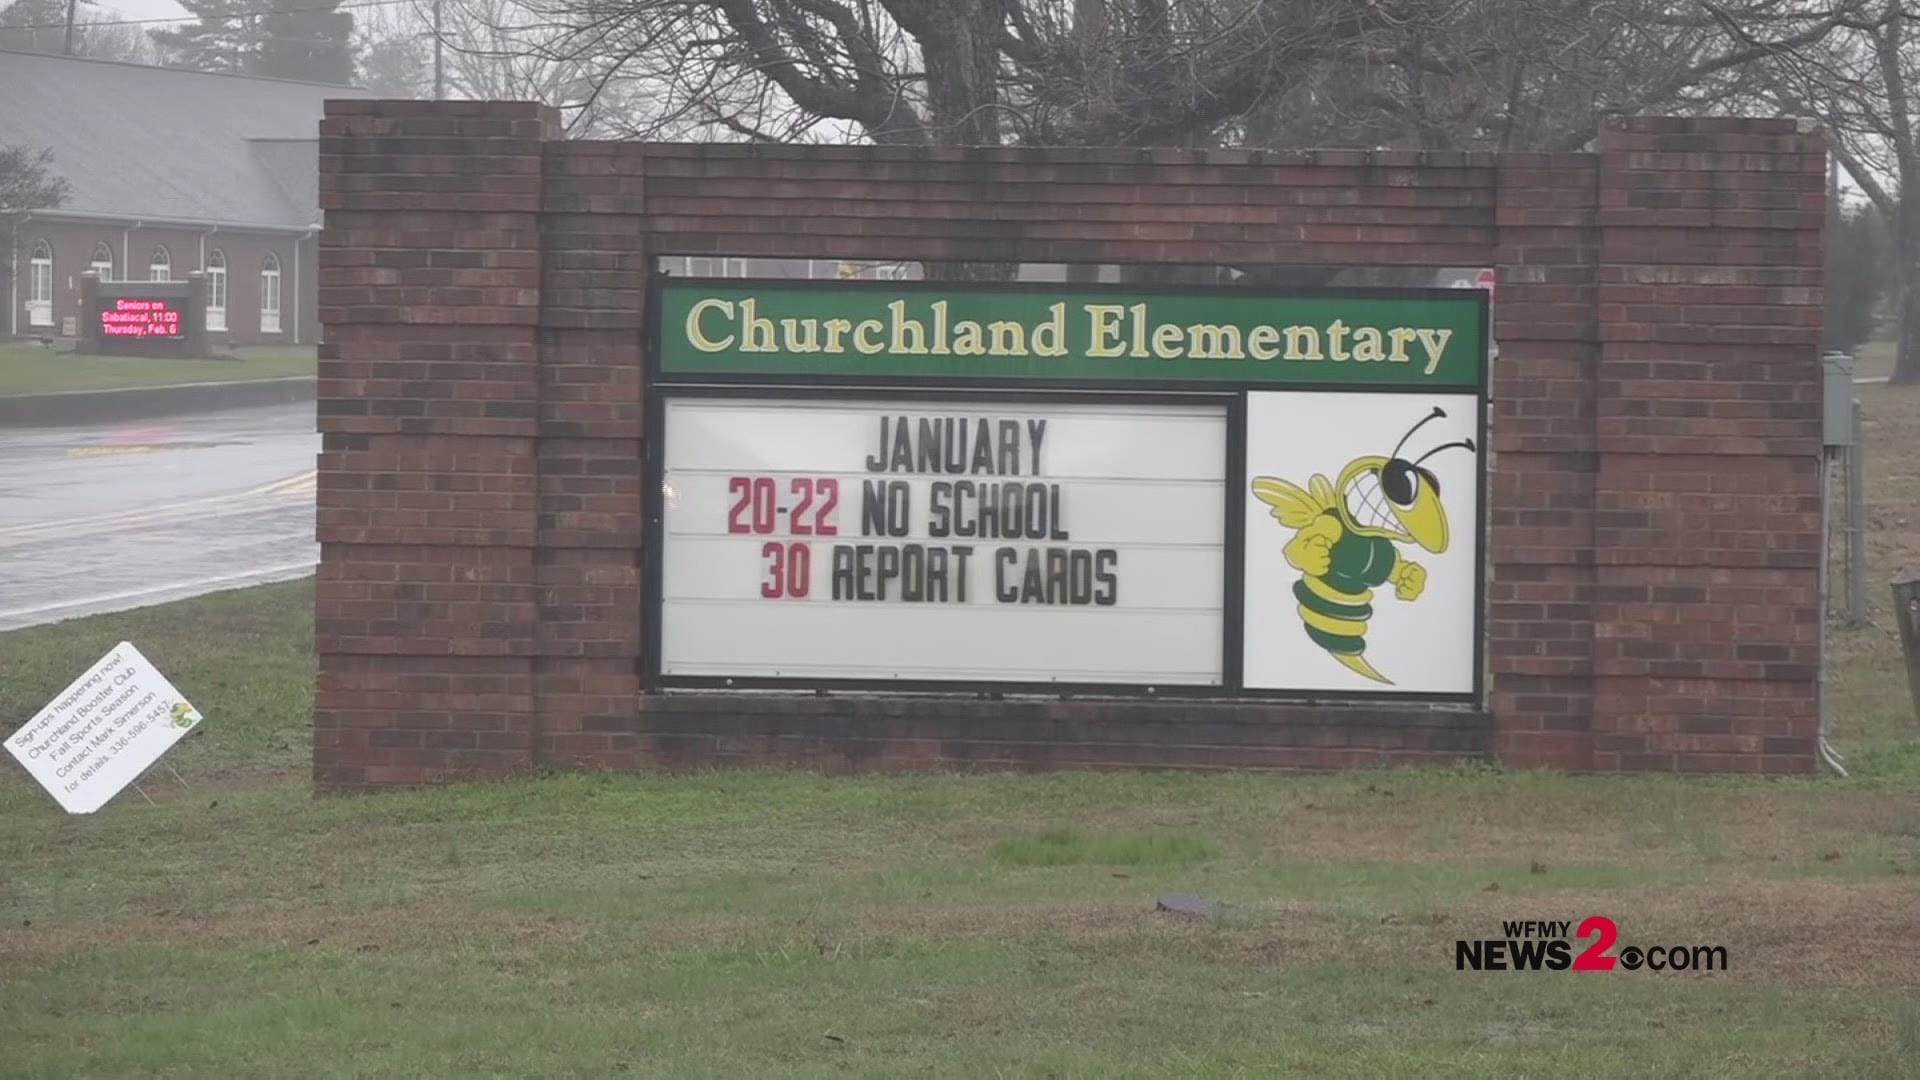 Churchland Elementary School